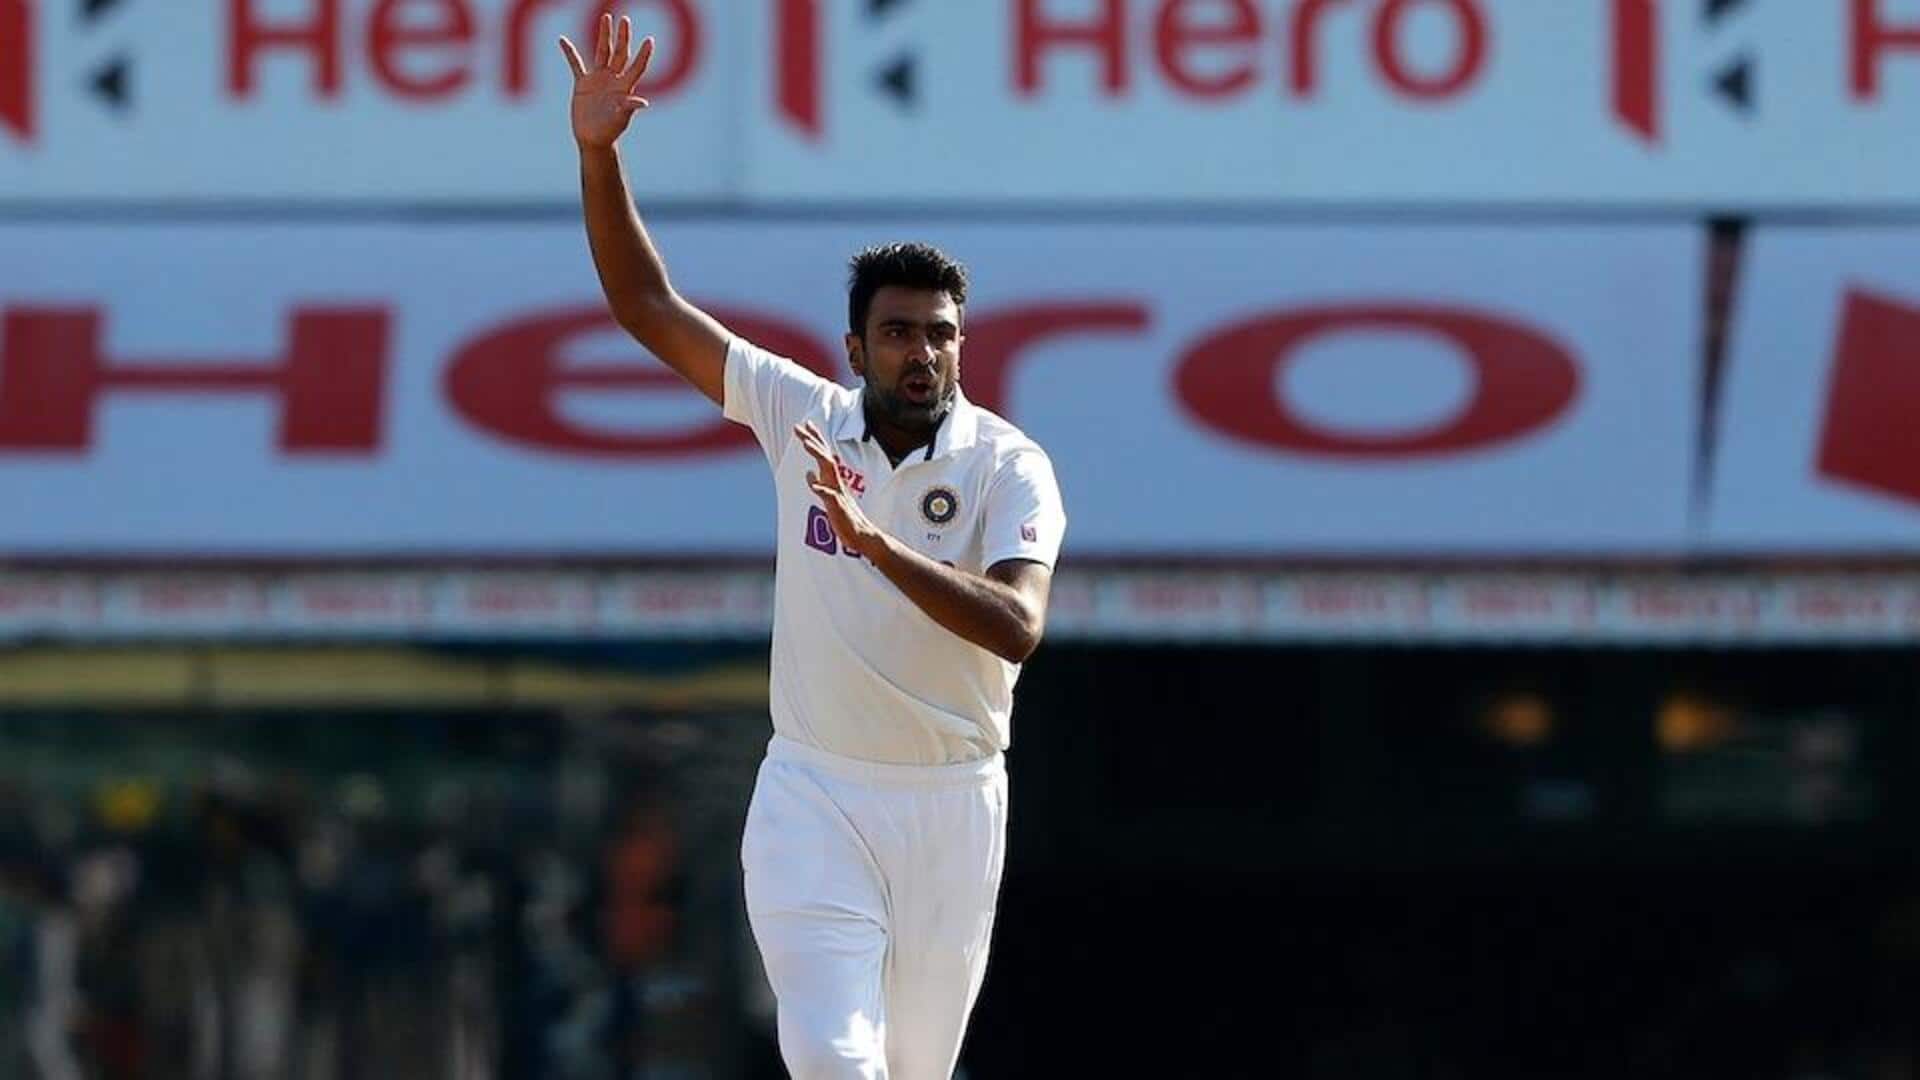 रविचंद्रन अश्विन सबसे तेज 500 टेस्ट विकेट चटकाने वाले दूसरे गेंदबाज बने, बनाए ये रिकार्ड्स 